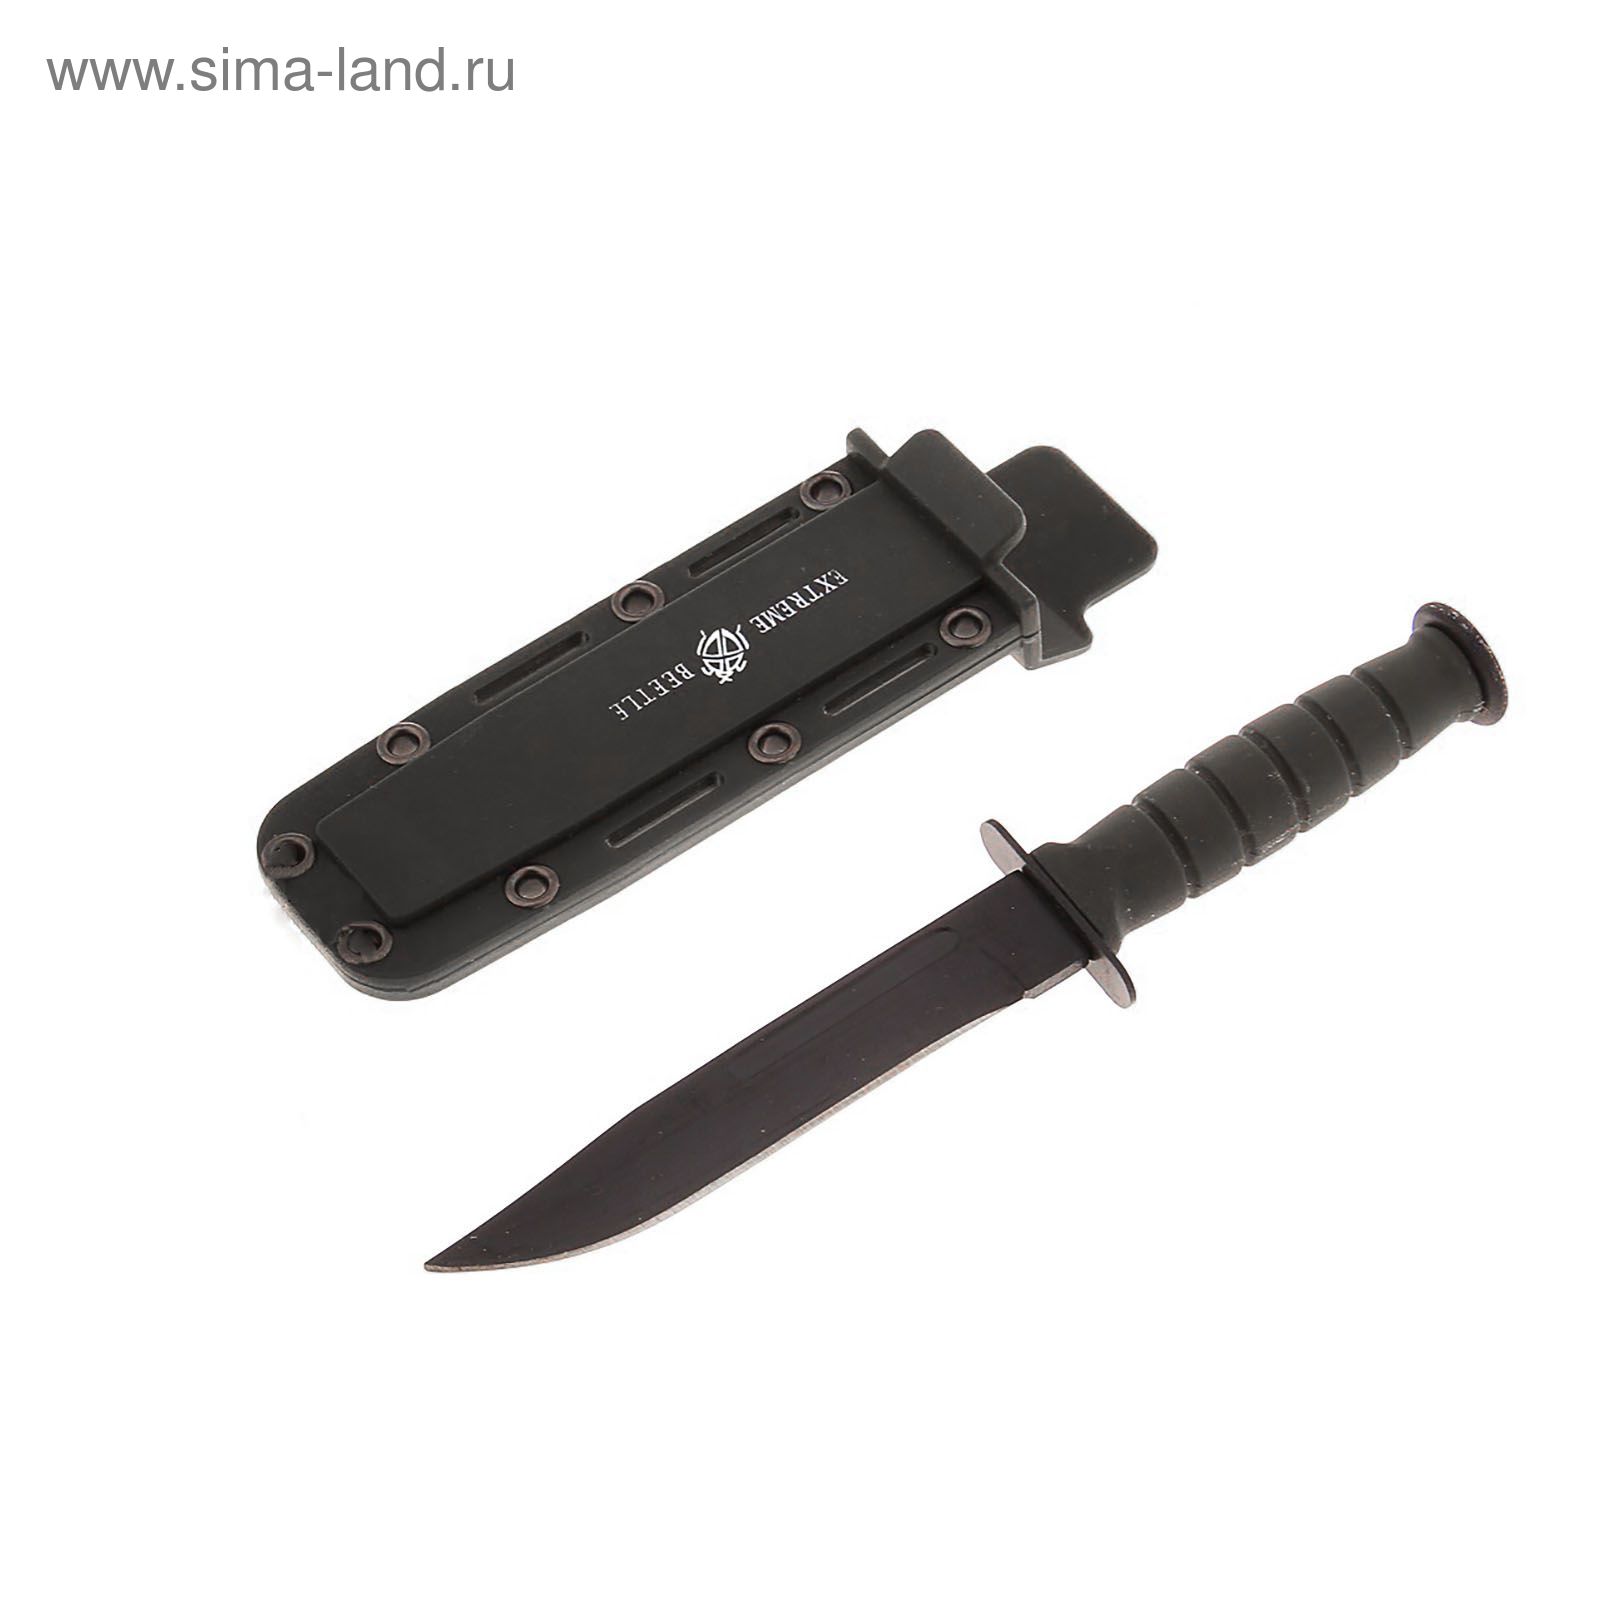 Нож перочинный с пластиковой ручкой, чехол на цепочке серый